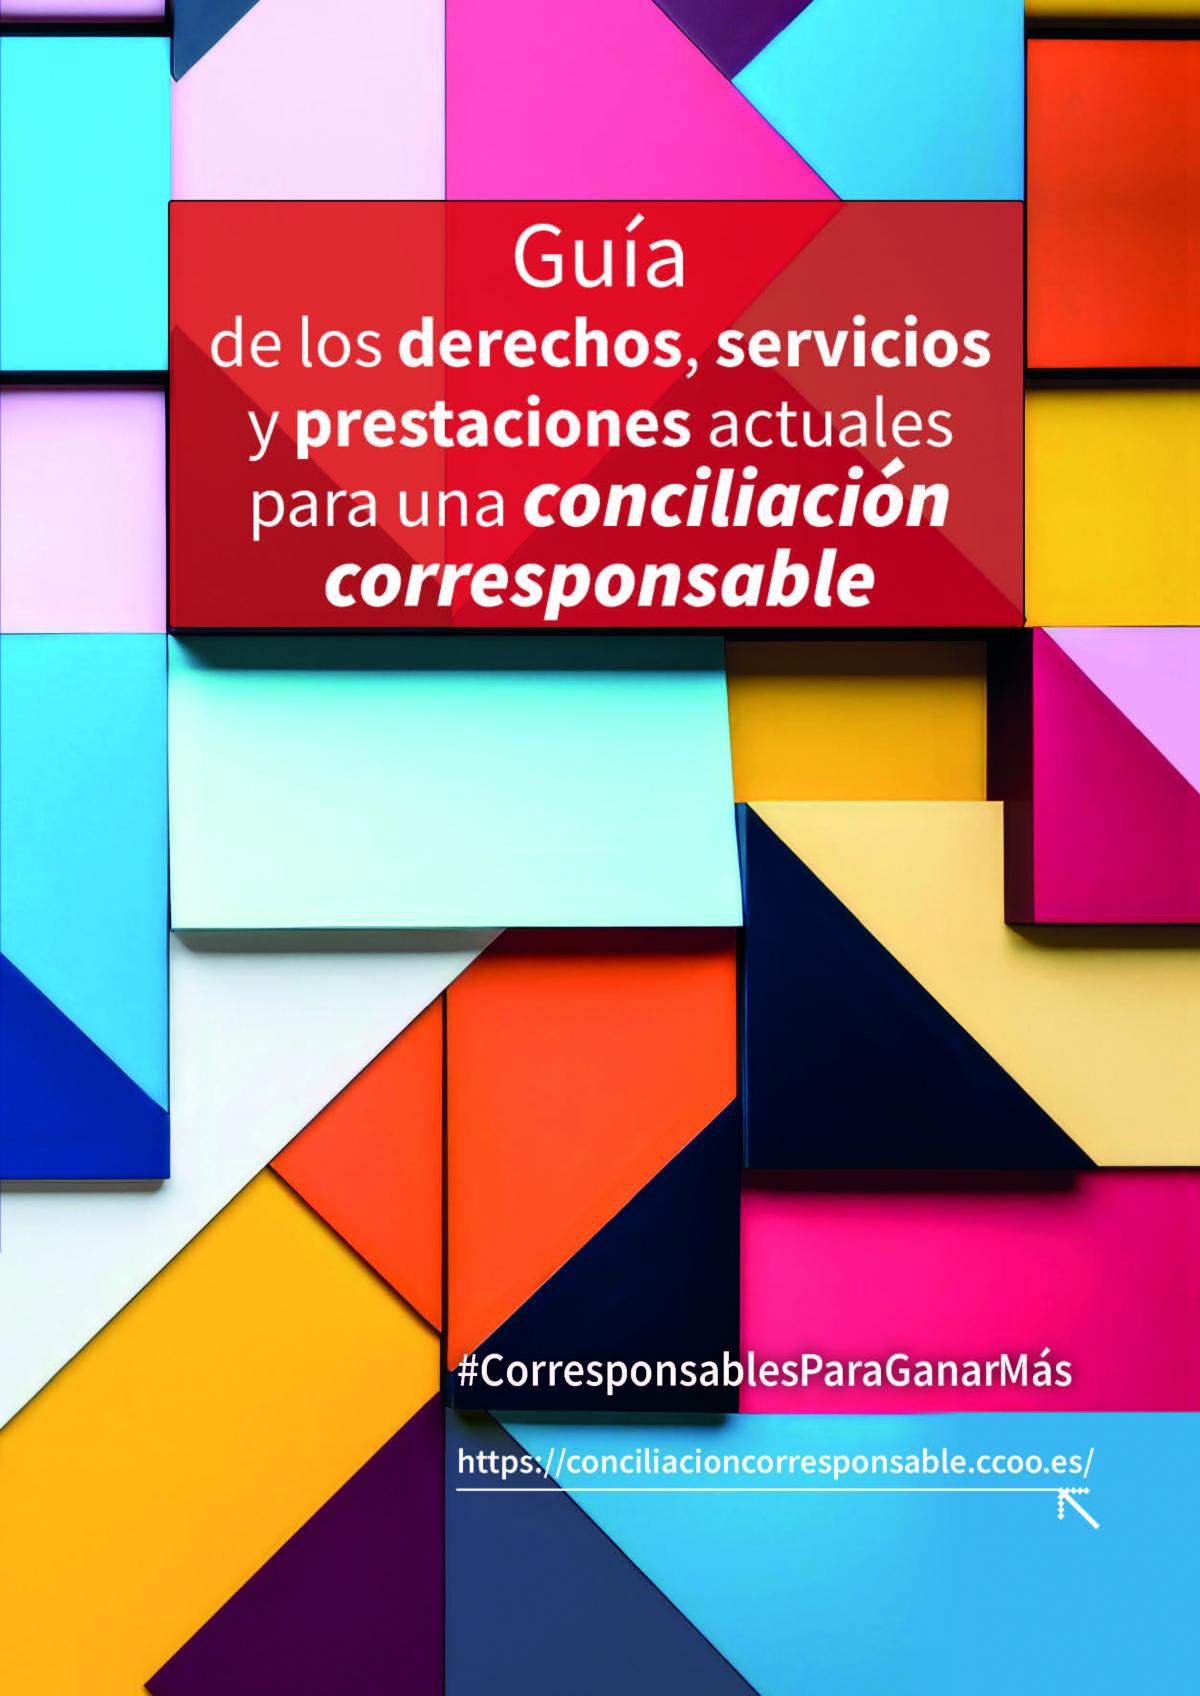 Gua de los derechos, servicios y prestaciones actuales para una conciliacin corresponsable.